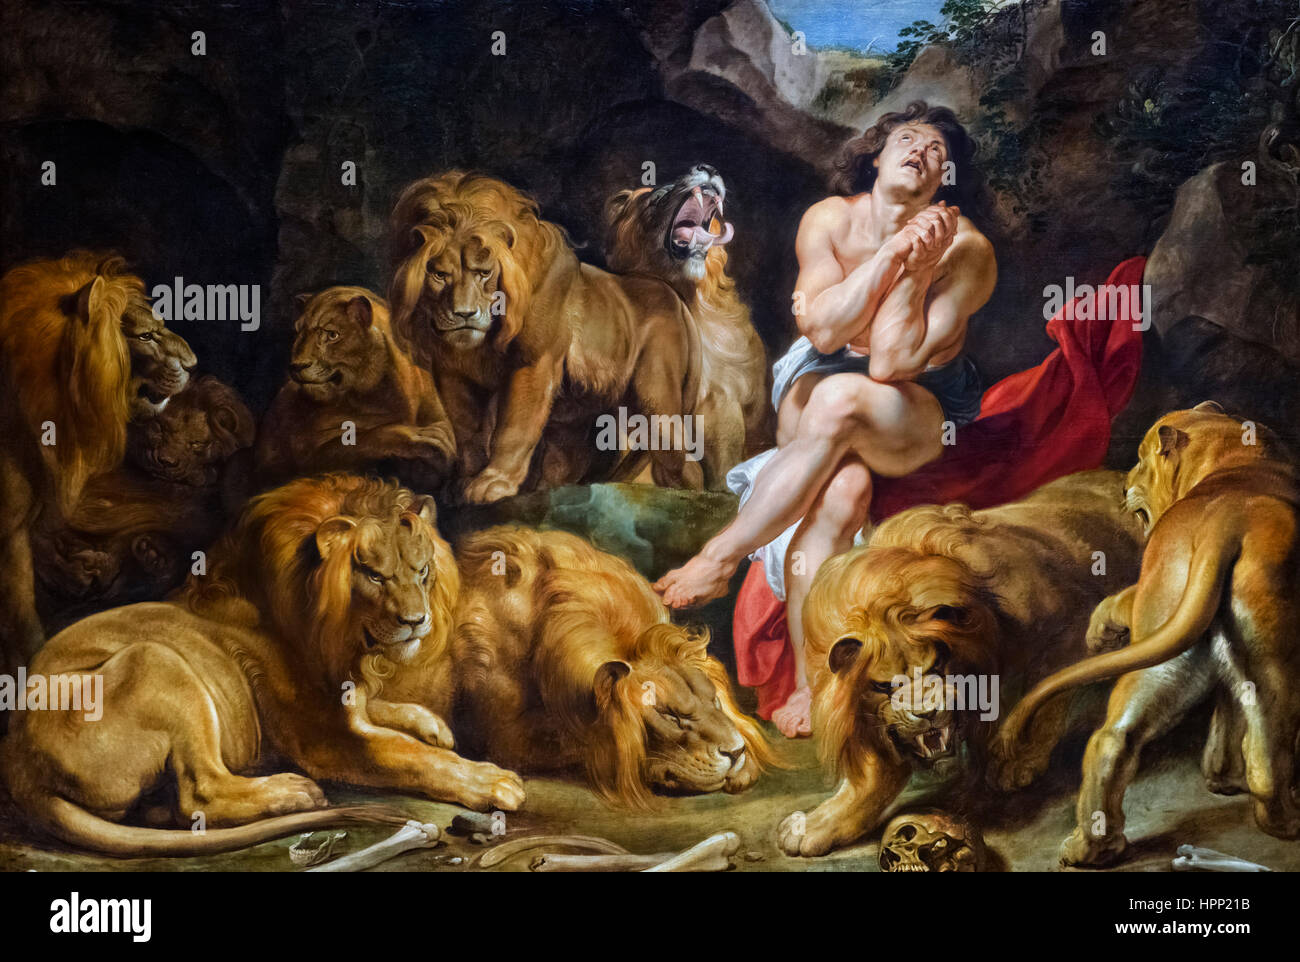 Daniele nella fossa dei leoni da Peter Paul Rubens, olio su tela, c.1614/16. Foto Stock